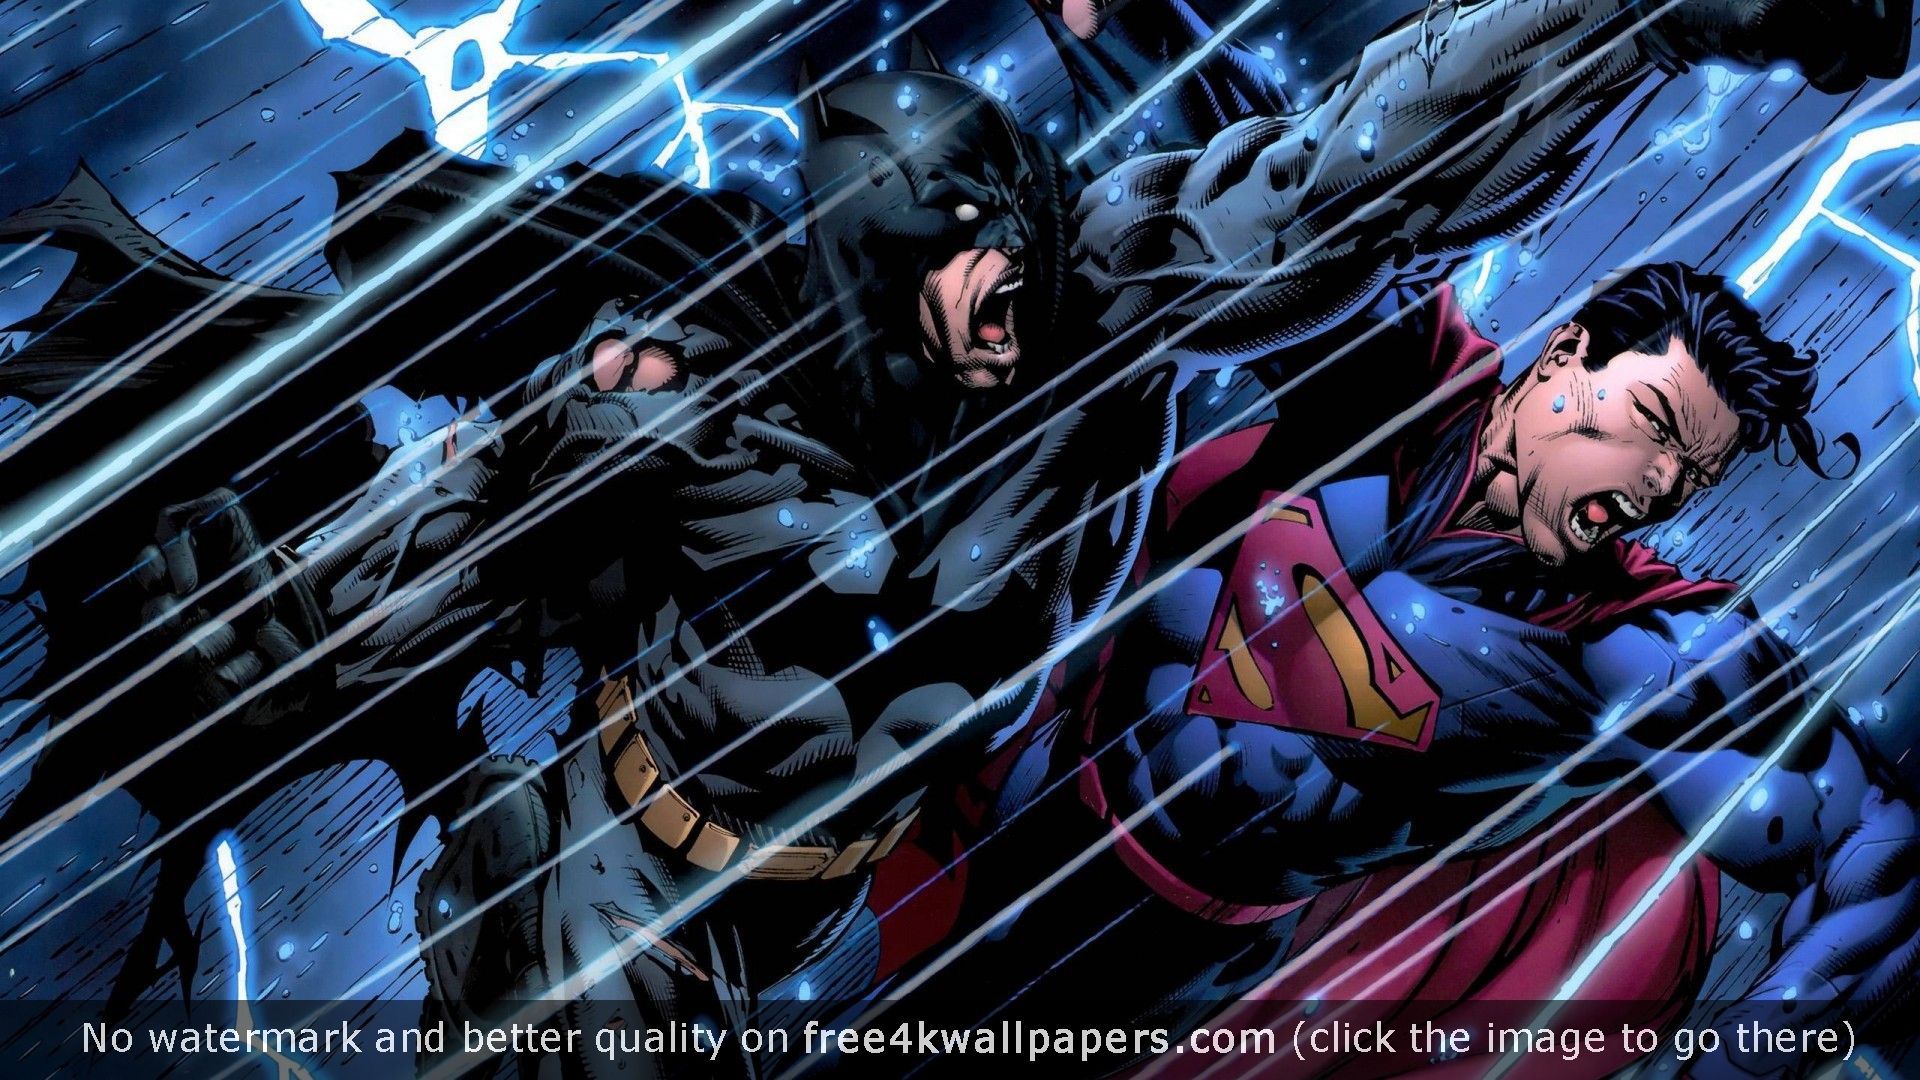 44+] Batman vs Superman 4K Wallpaper - WallpaperSafari